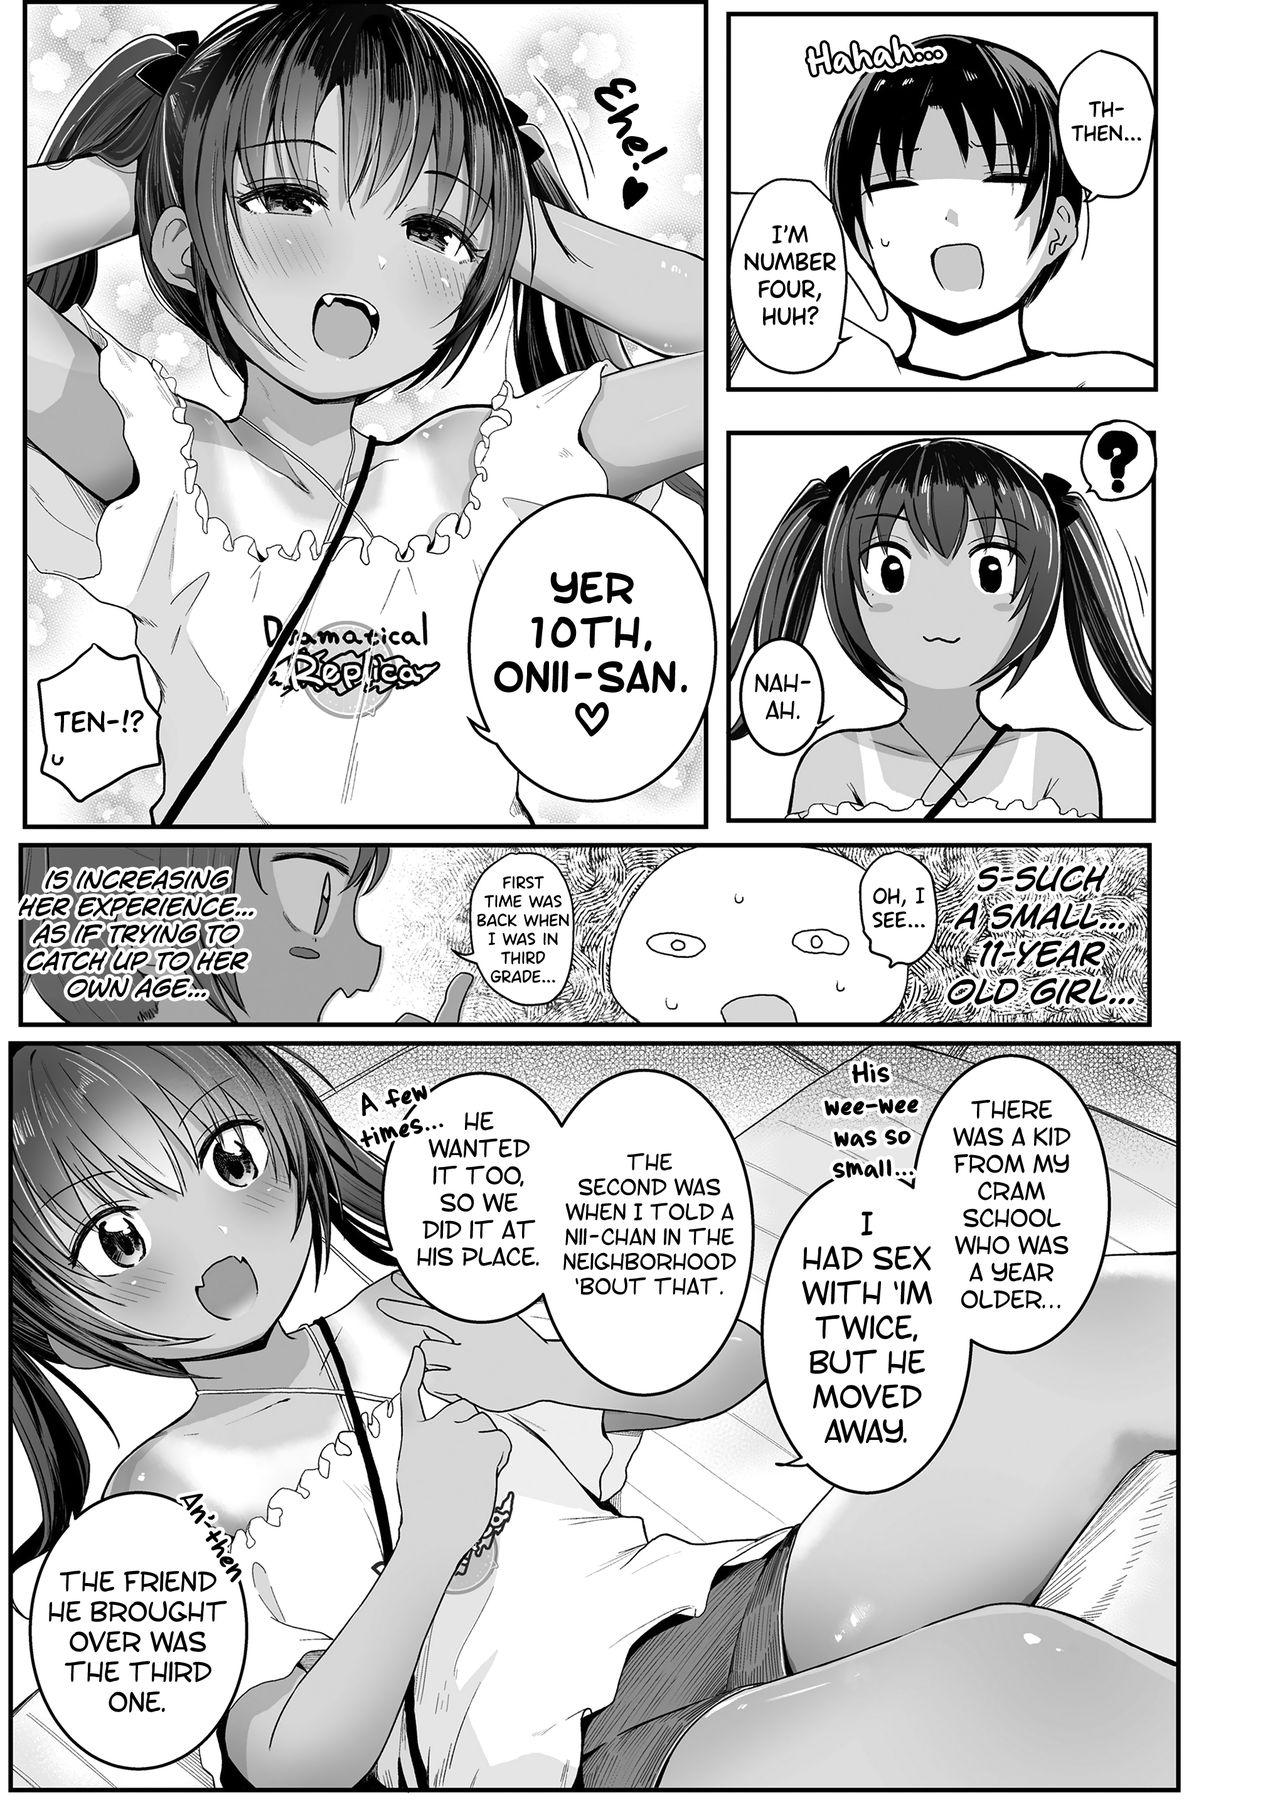 Tesao Ecchi Daisuki Girlsfucking - Page 3